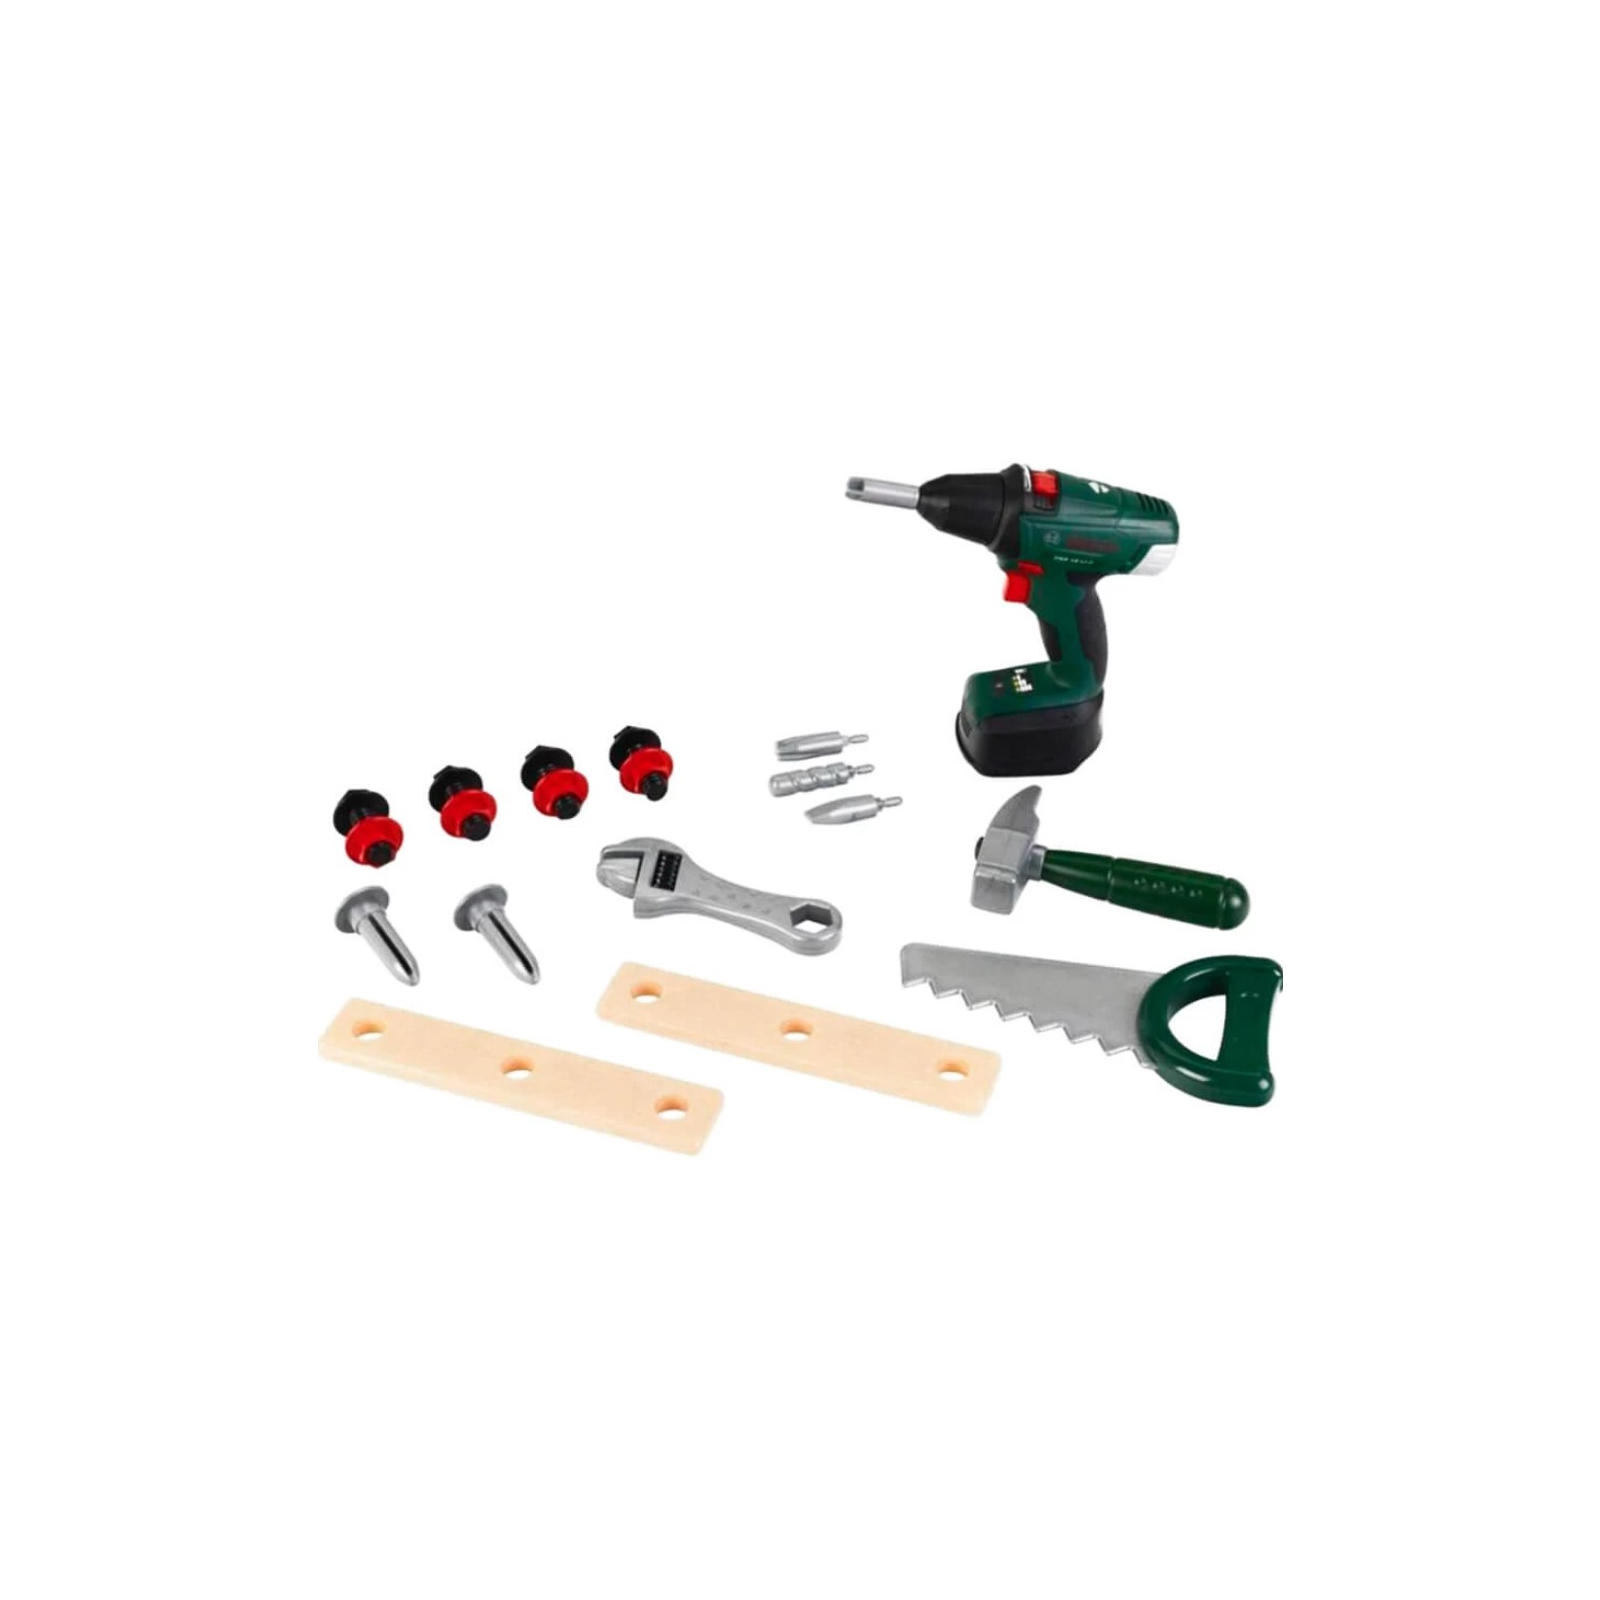 Игровой набор Bosch Набор инструментов в коробке (8520) изображение 2